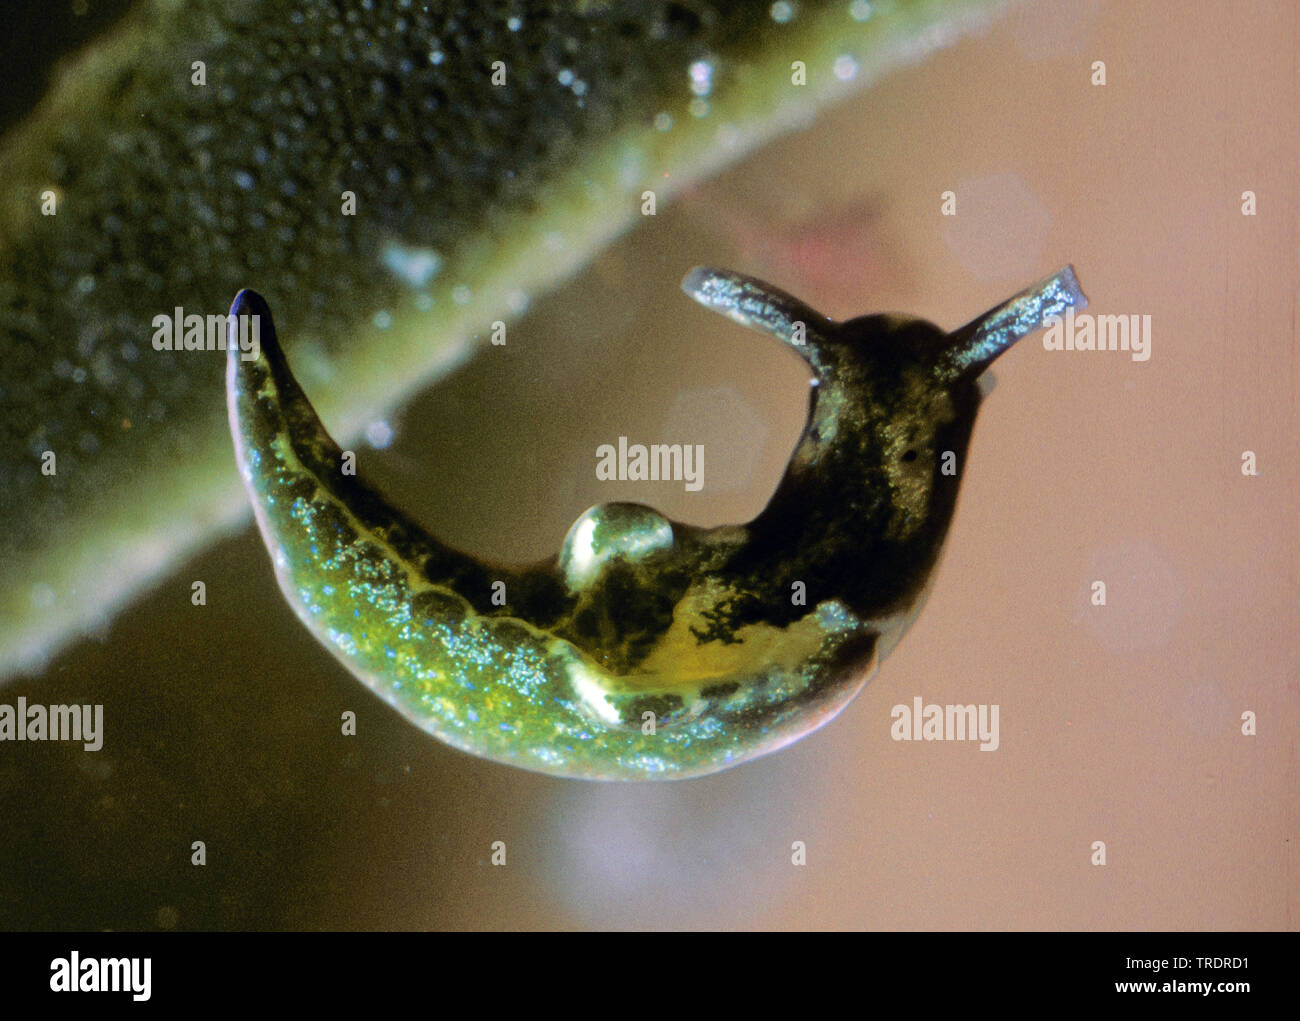 Escargot de velours vert, vert, elysia suceurs de sève (slug Elysia viridis), couleur verte par embeded chloroplastes, Allemagne Banque D'Images